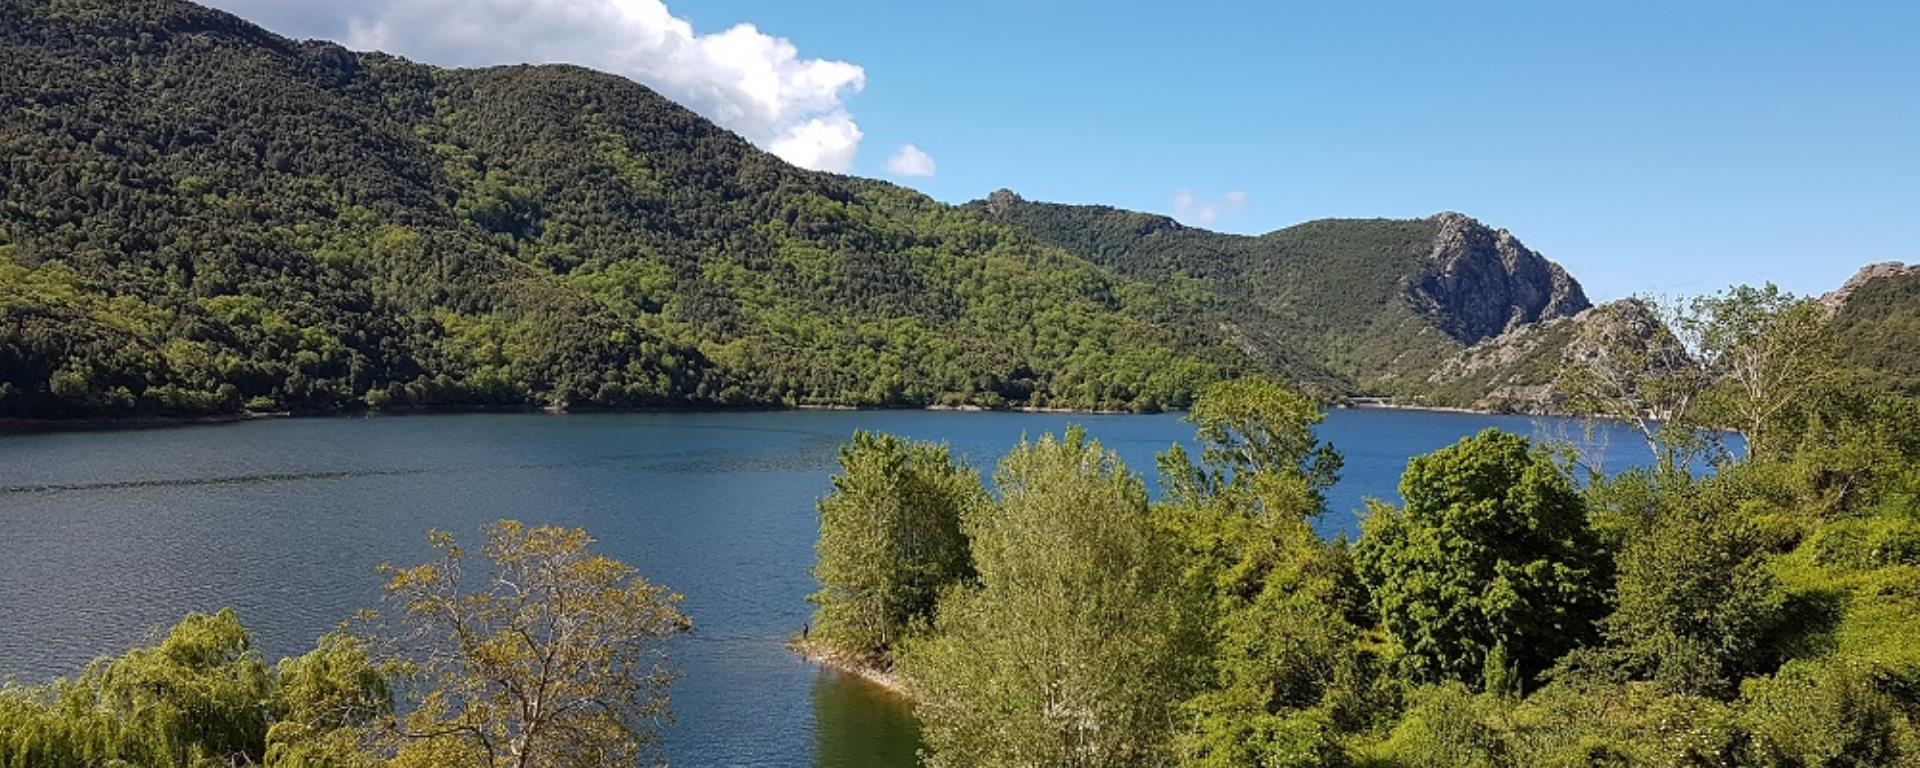 2020- Casalta - Vue Lac Tolla @casalta mattea